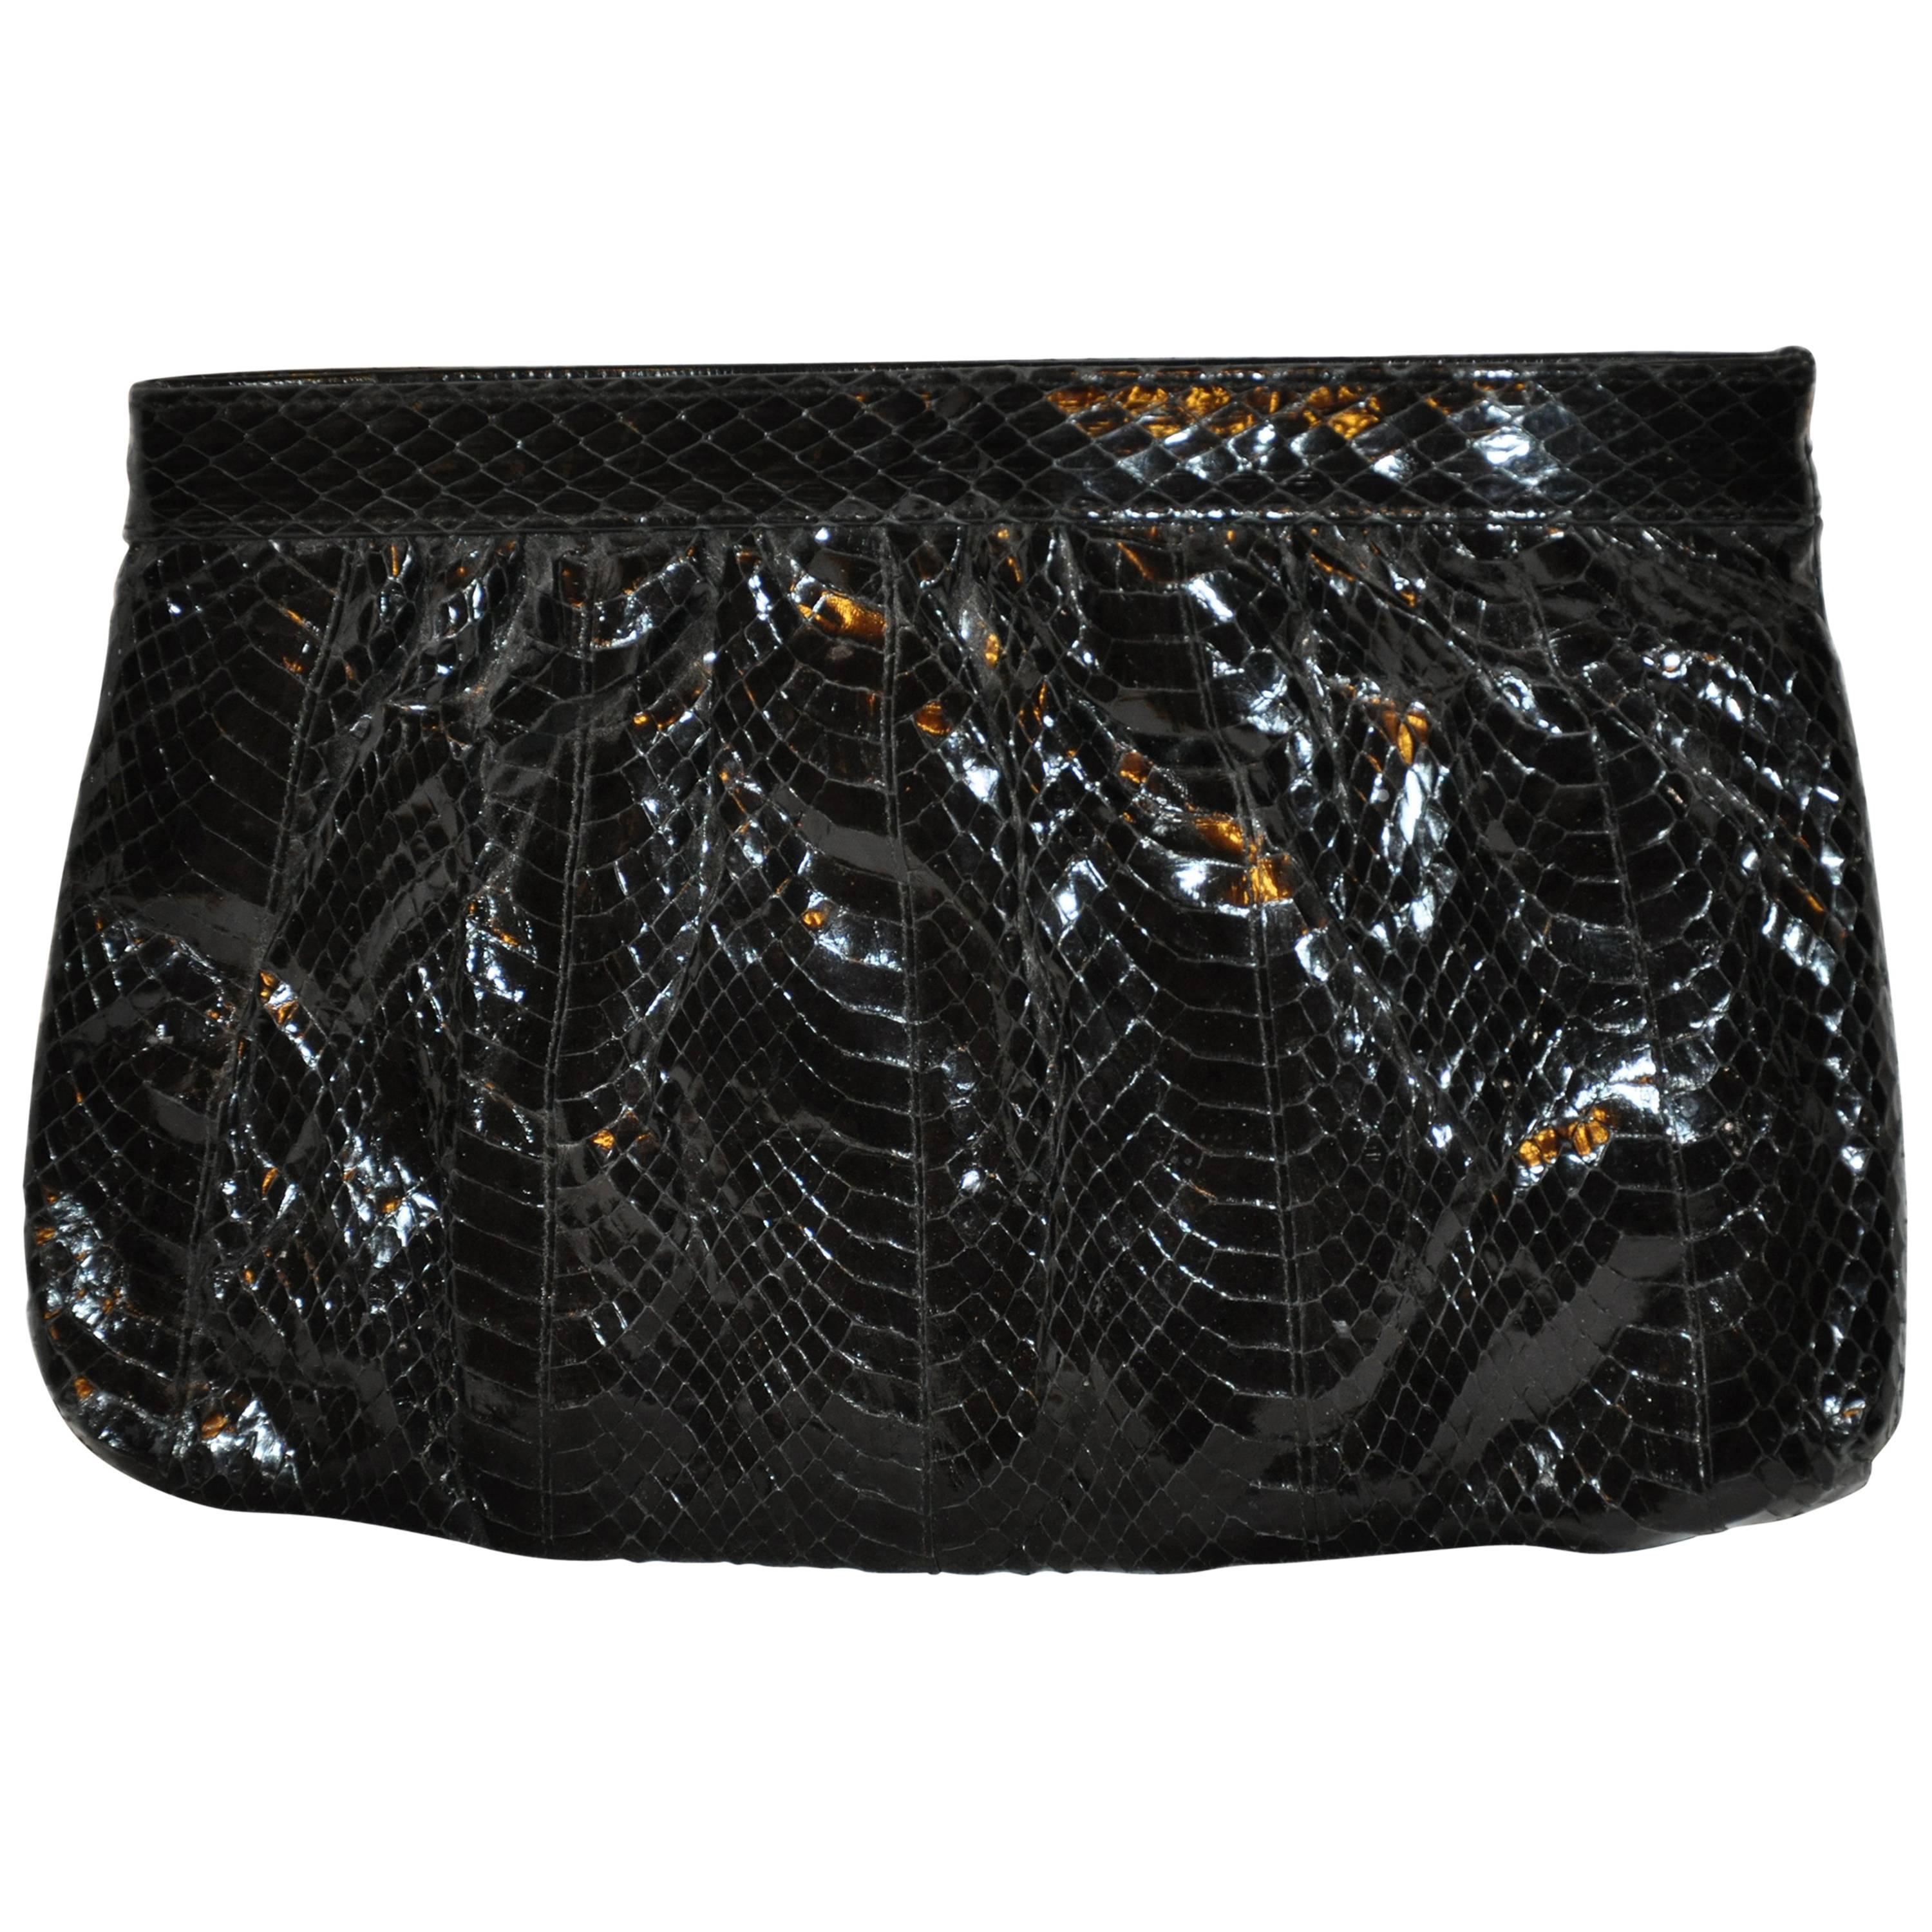 Saks Fifth Avenue Polished Black Snake Evening Clutch and Shoulder Bag